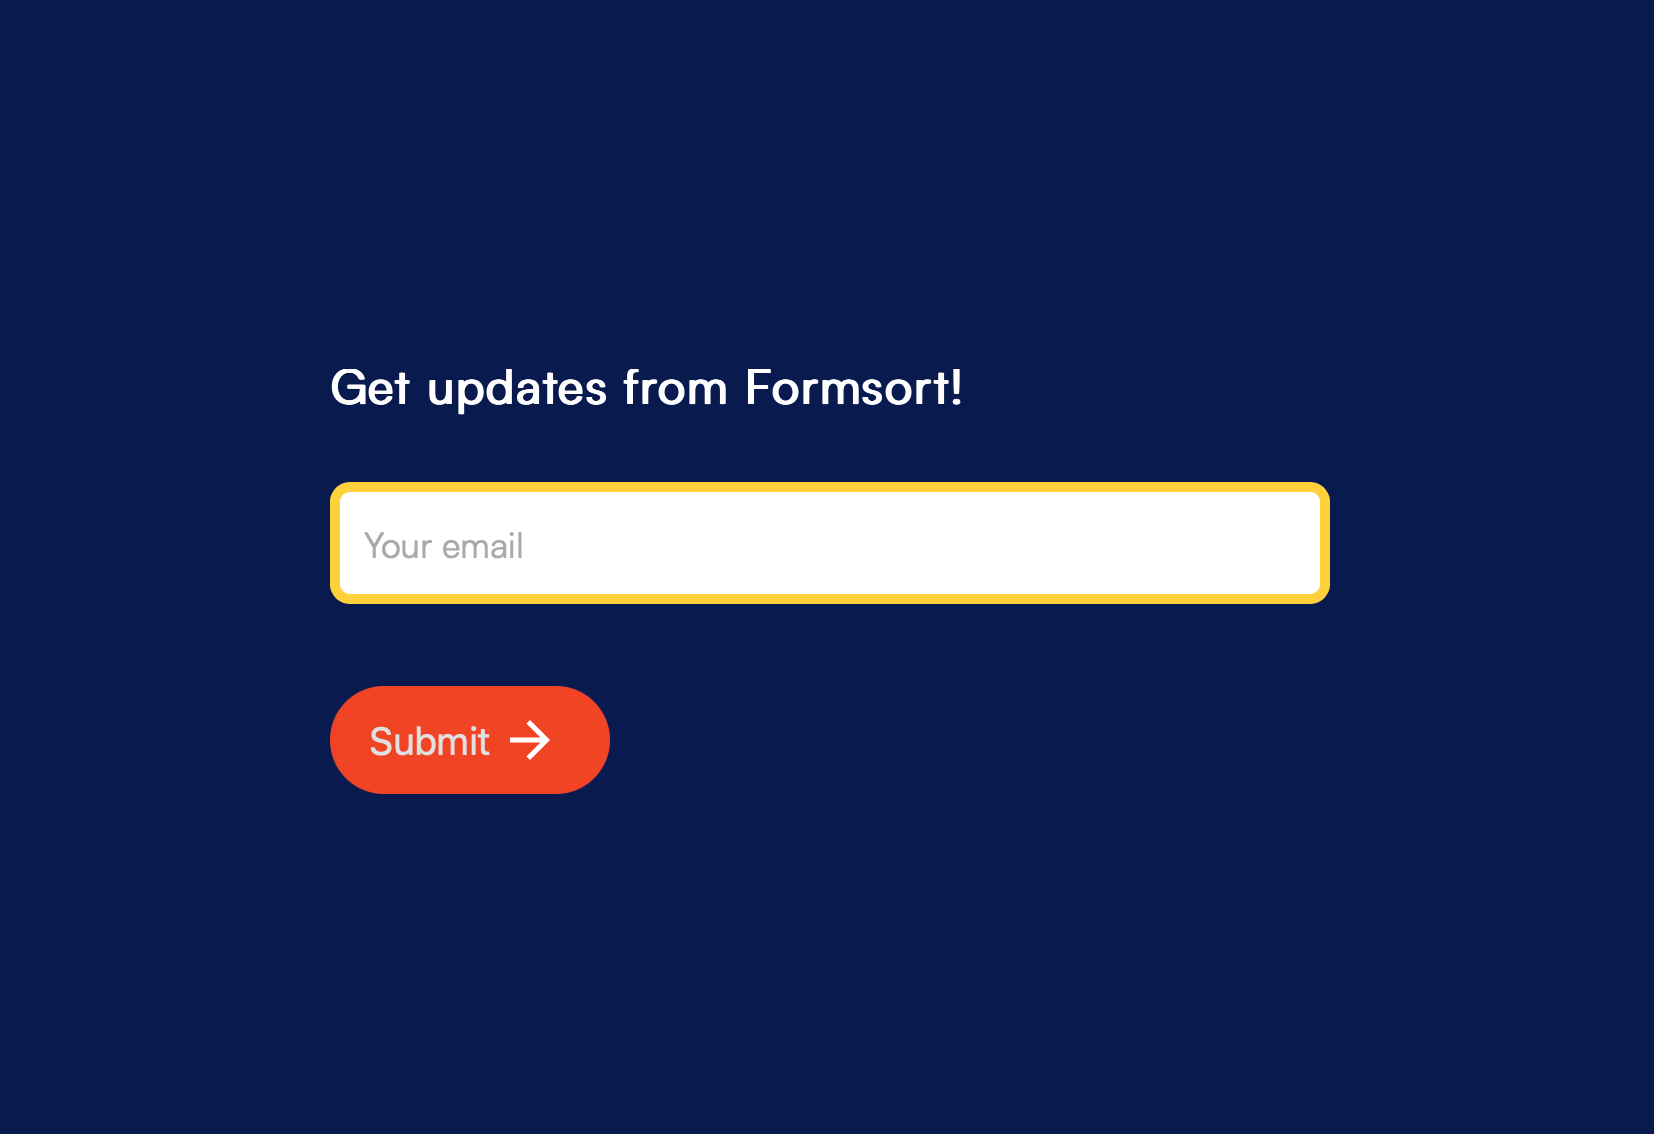 Newsletter sign-up form built on Formsort